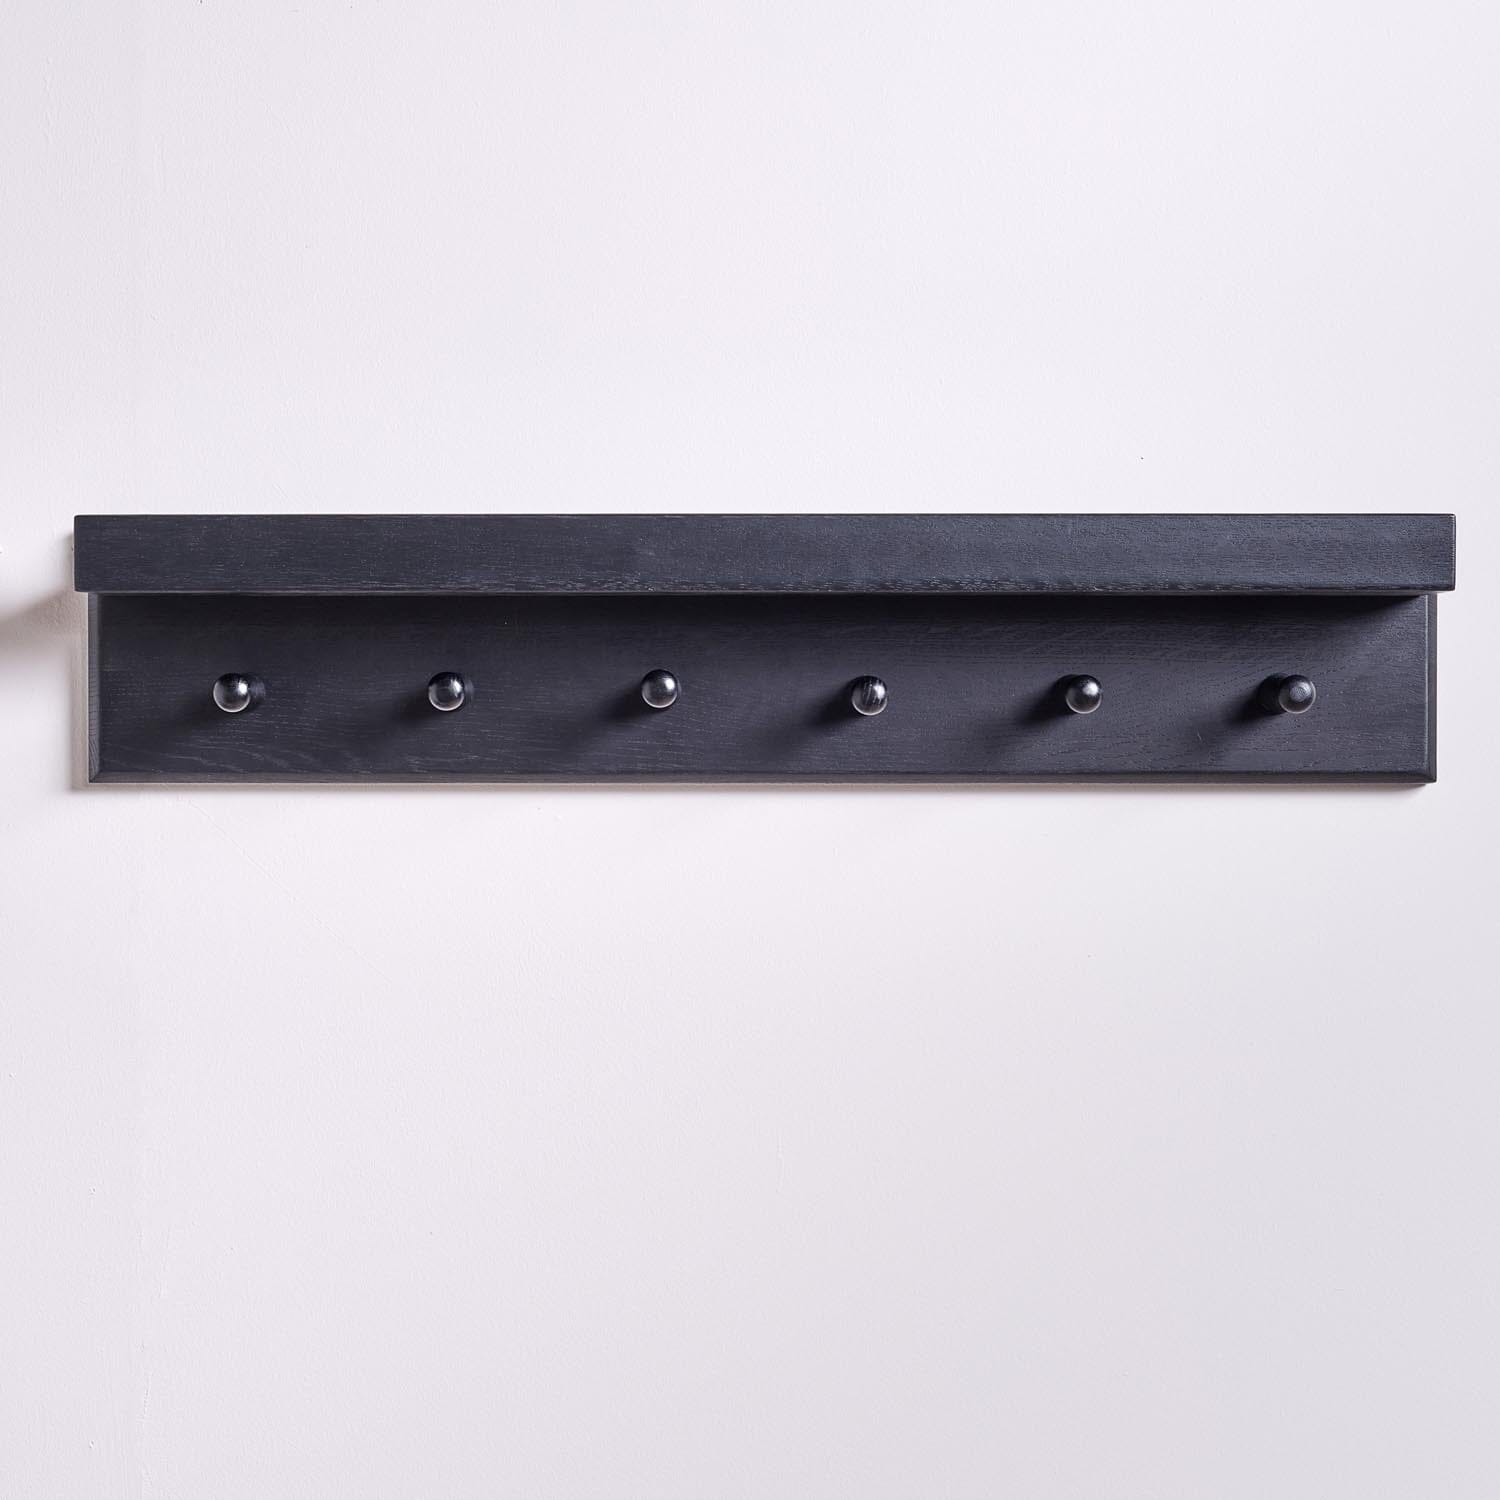 Black wooden coat rack with shelf - Laura James